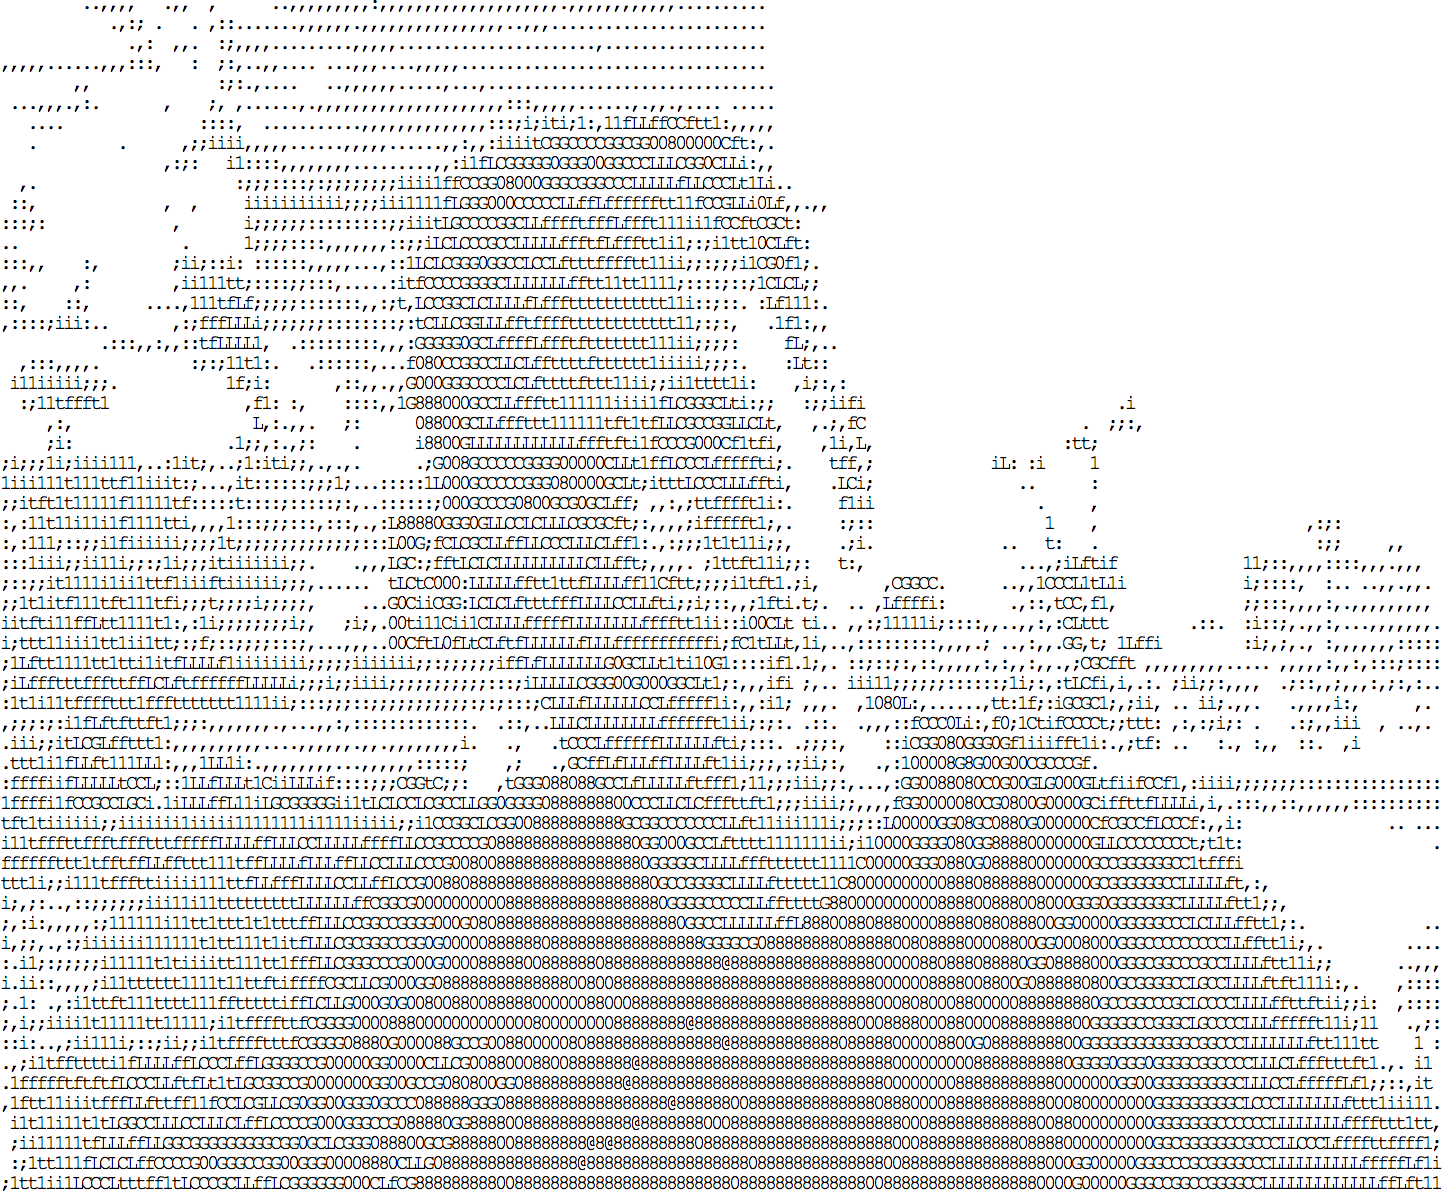 ASCII ইমেজ idevelop.ro/ascii-camera দ্বারা তৈরি